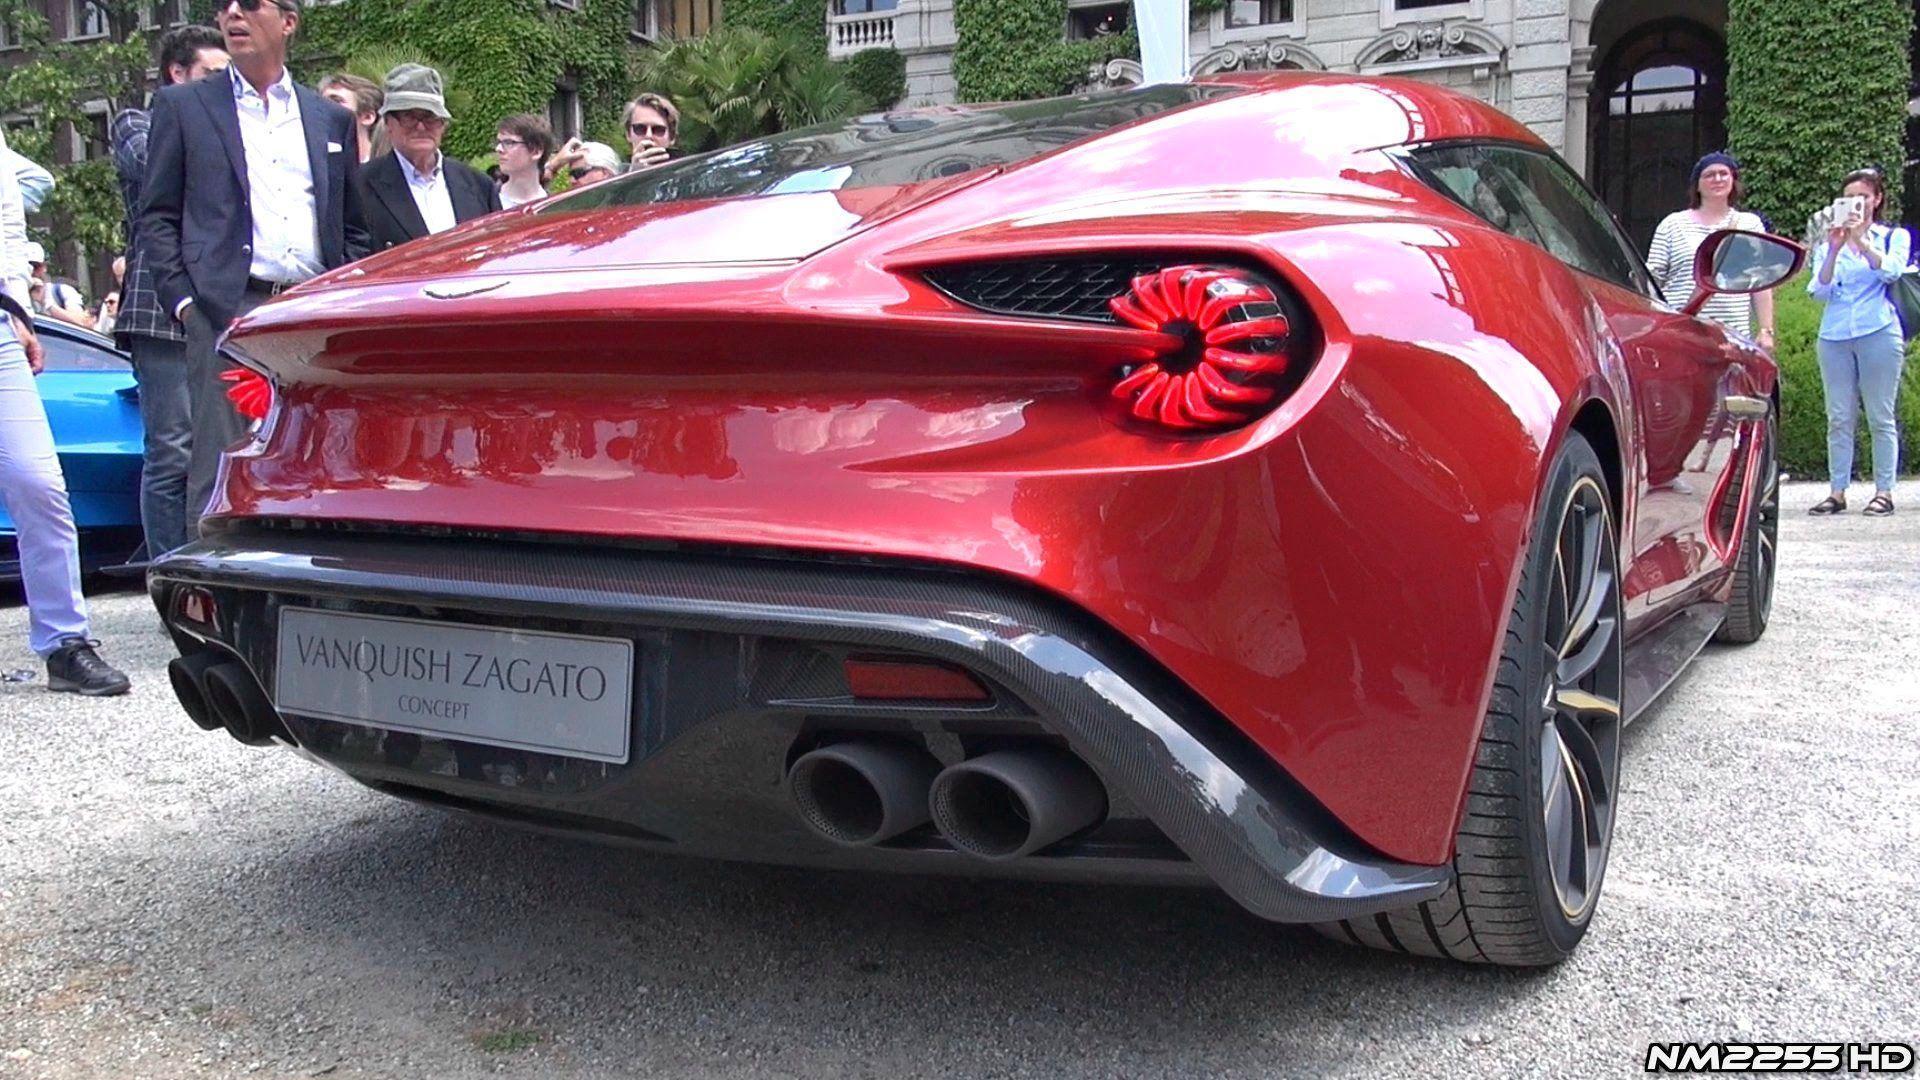 Aston Martin Vanquish Zagato concept debuts at Villa d&;Este